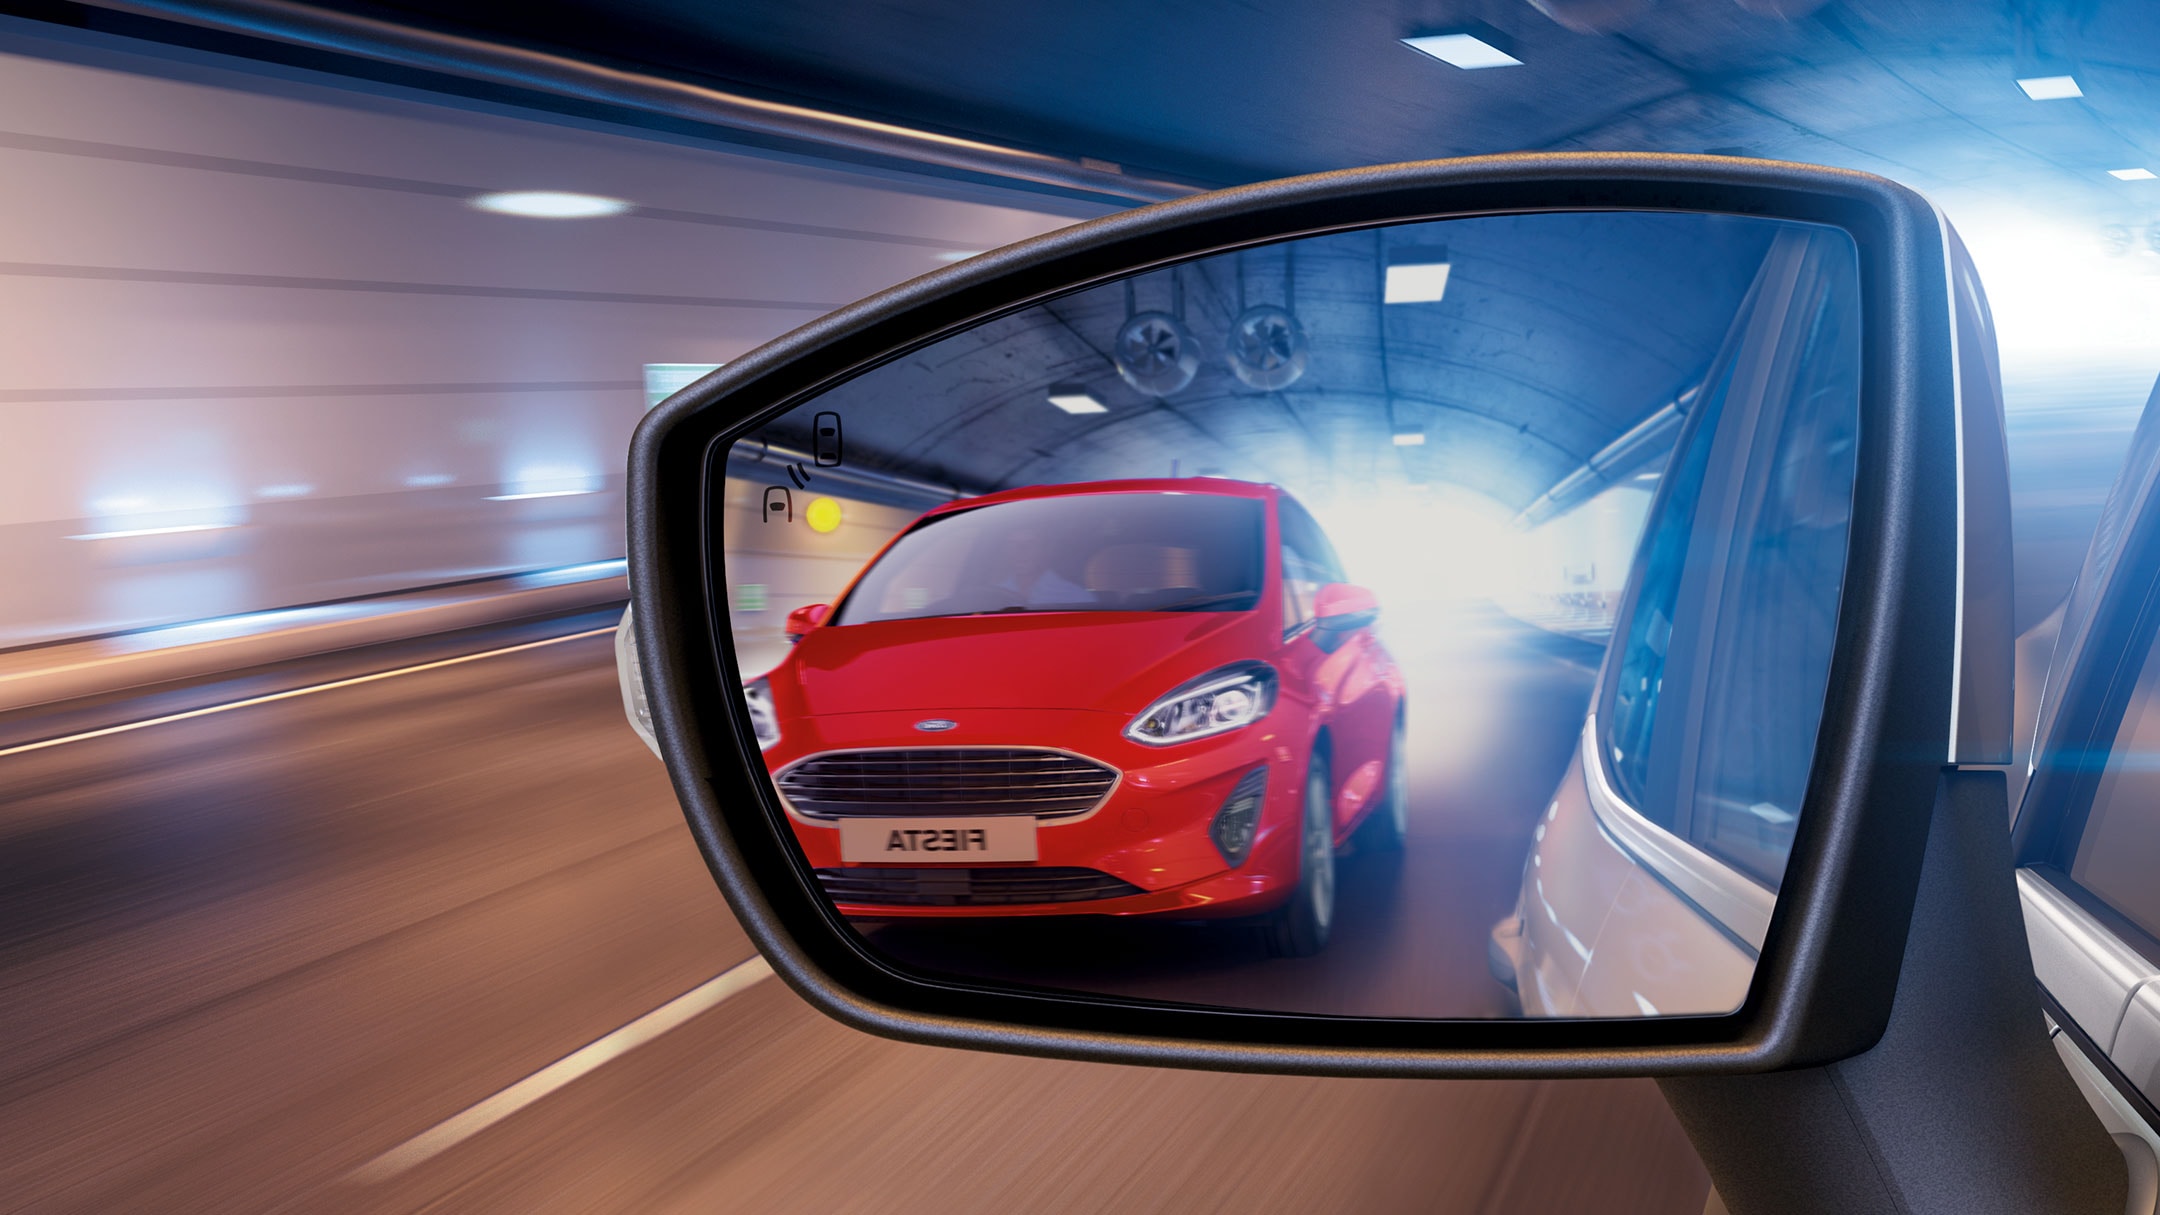 Ford EcoSport. Detailansicht des Seitenspiegels beim Fahren. Roter Ford Fiesta spiegelt sich